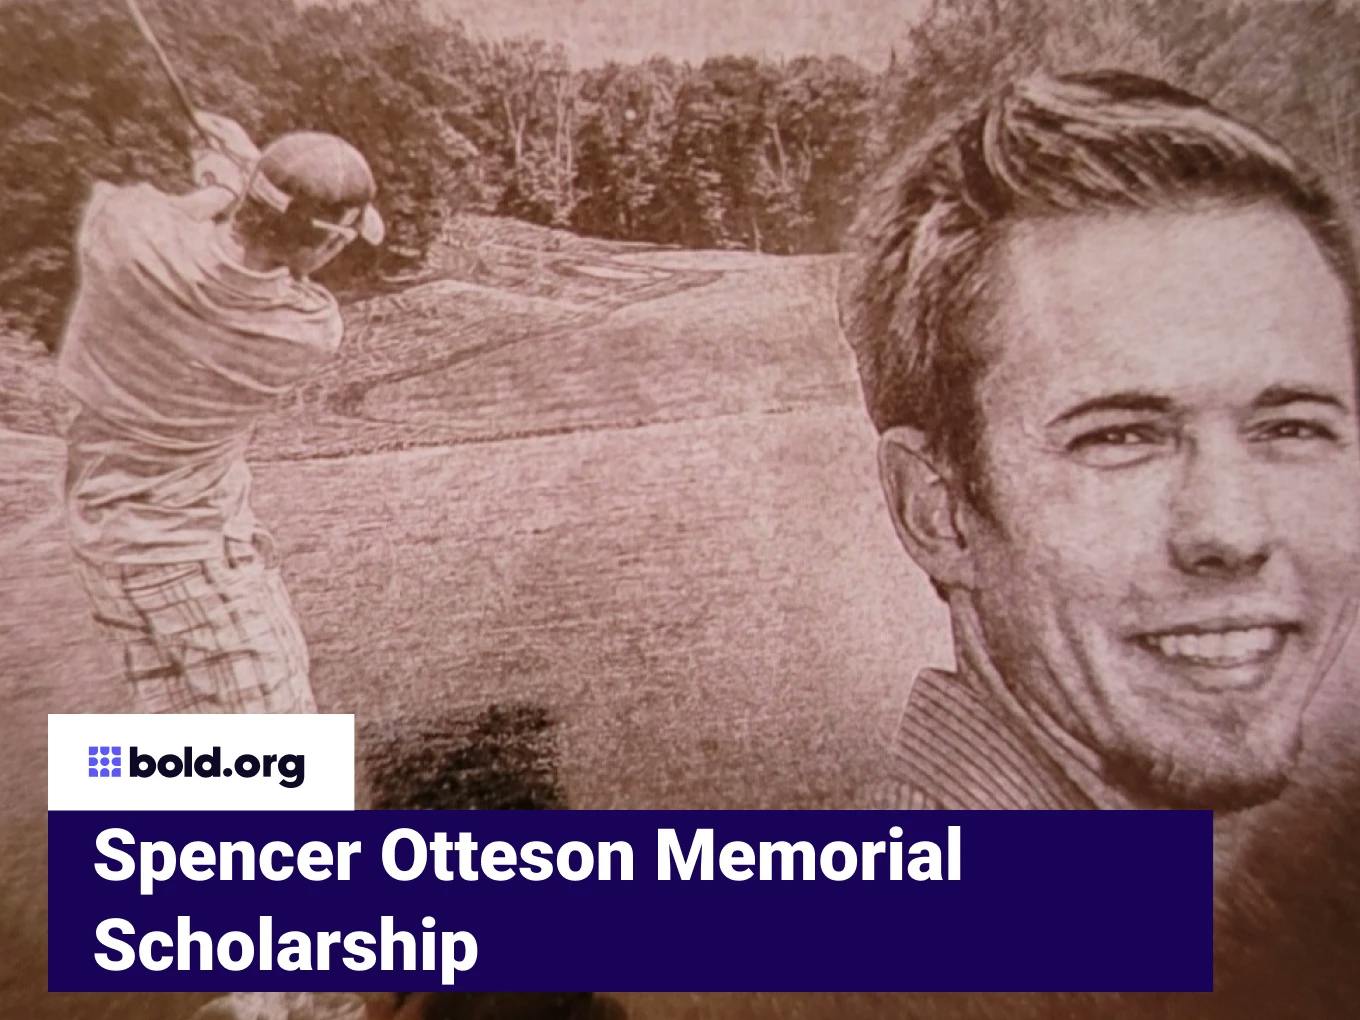 Spencer Otteson Memorial Scholarship